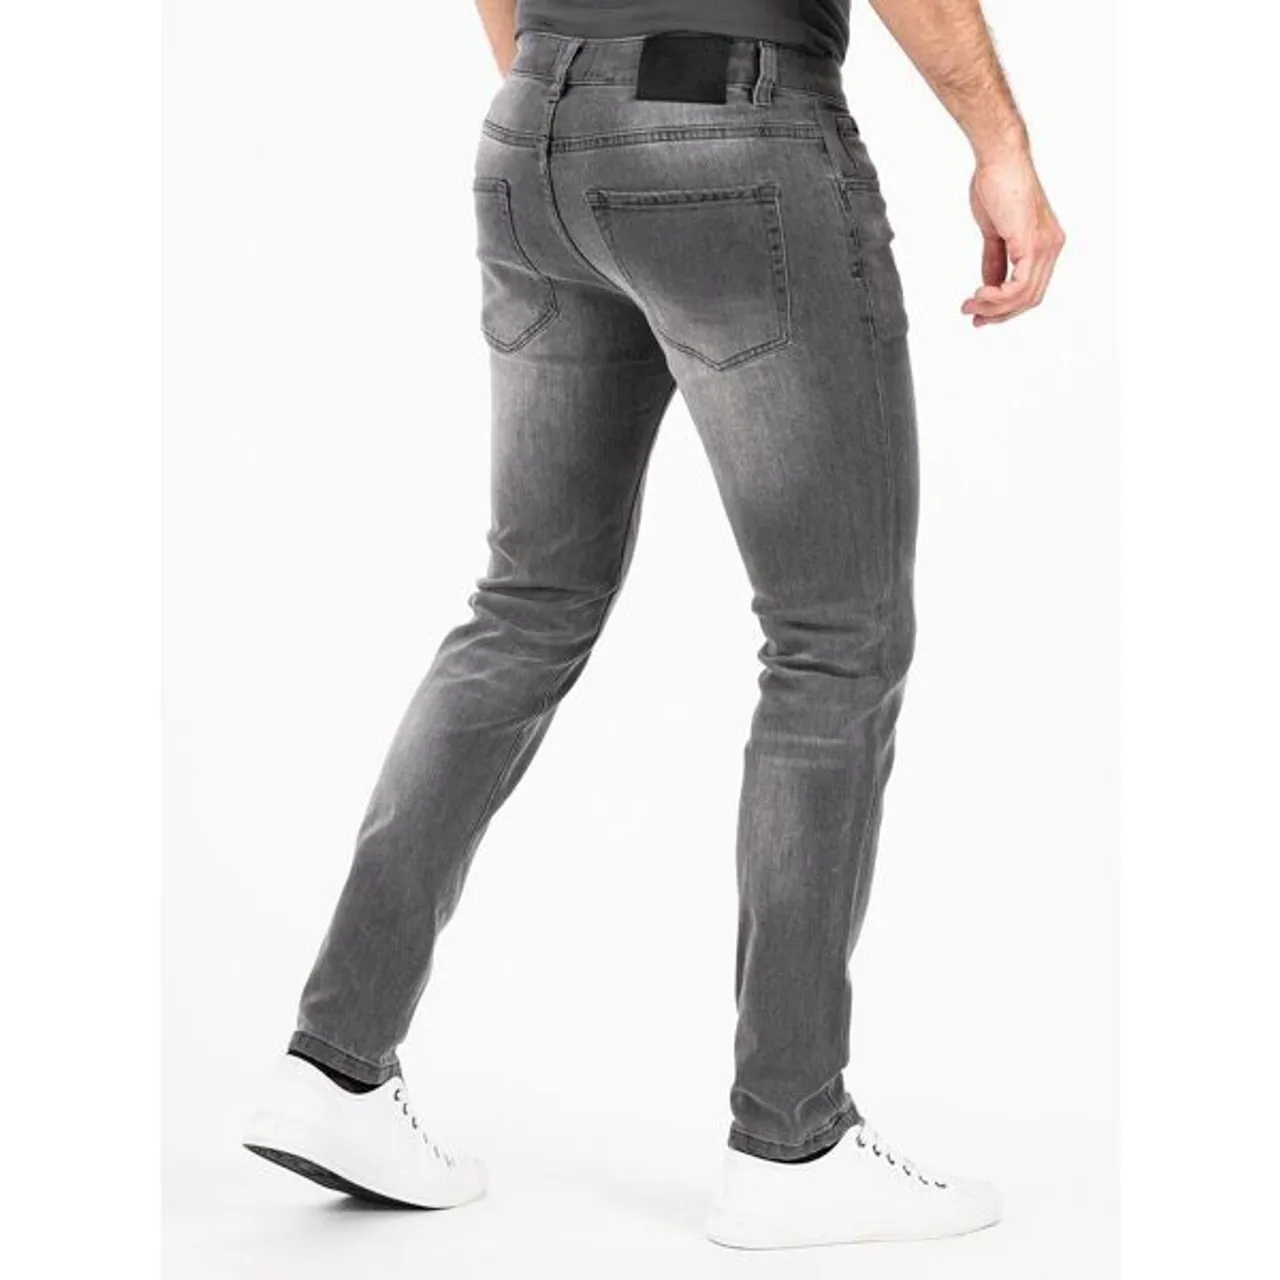 Slim-fit-Jeans PEAK TIME "München" Gr. 36, Länge 32, grau (hellgrau) Herren Jeans 5-Pocket-Jeans